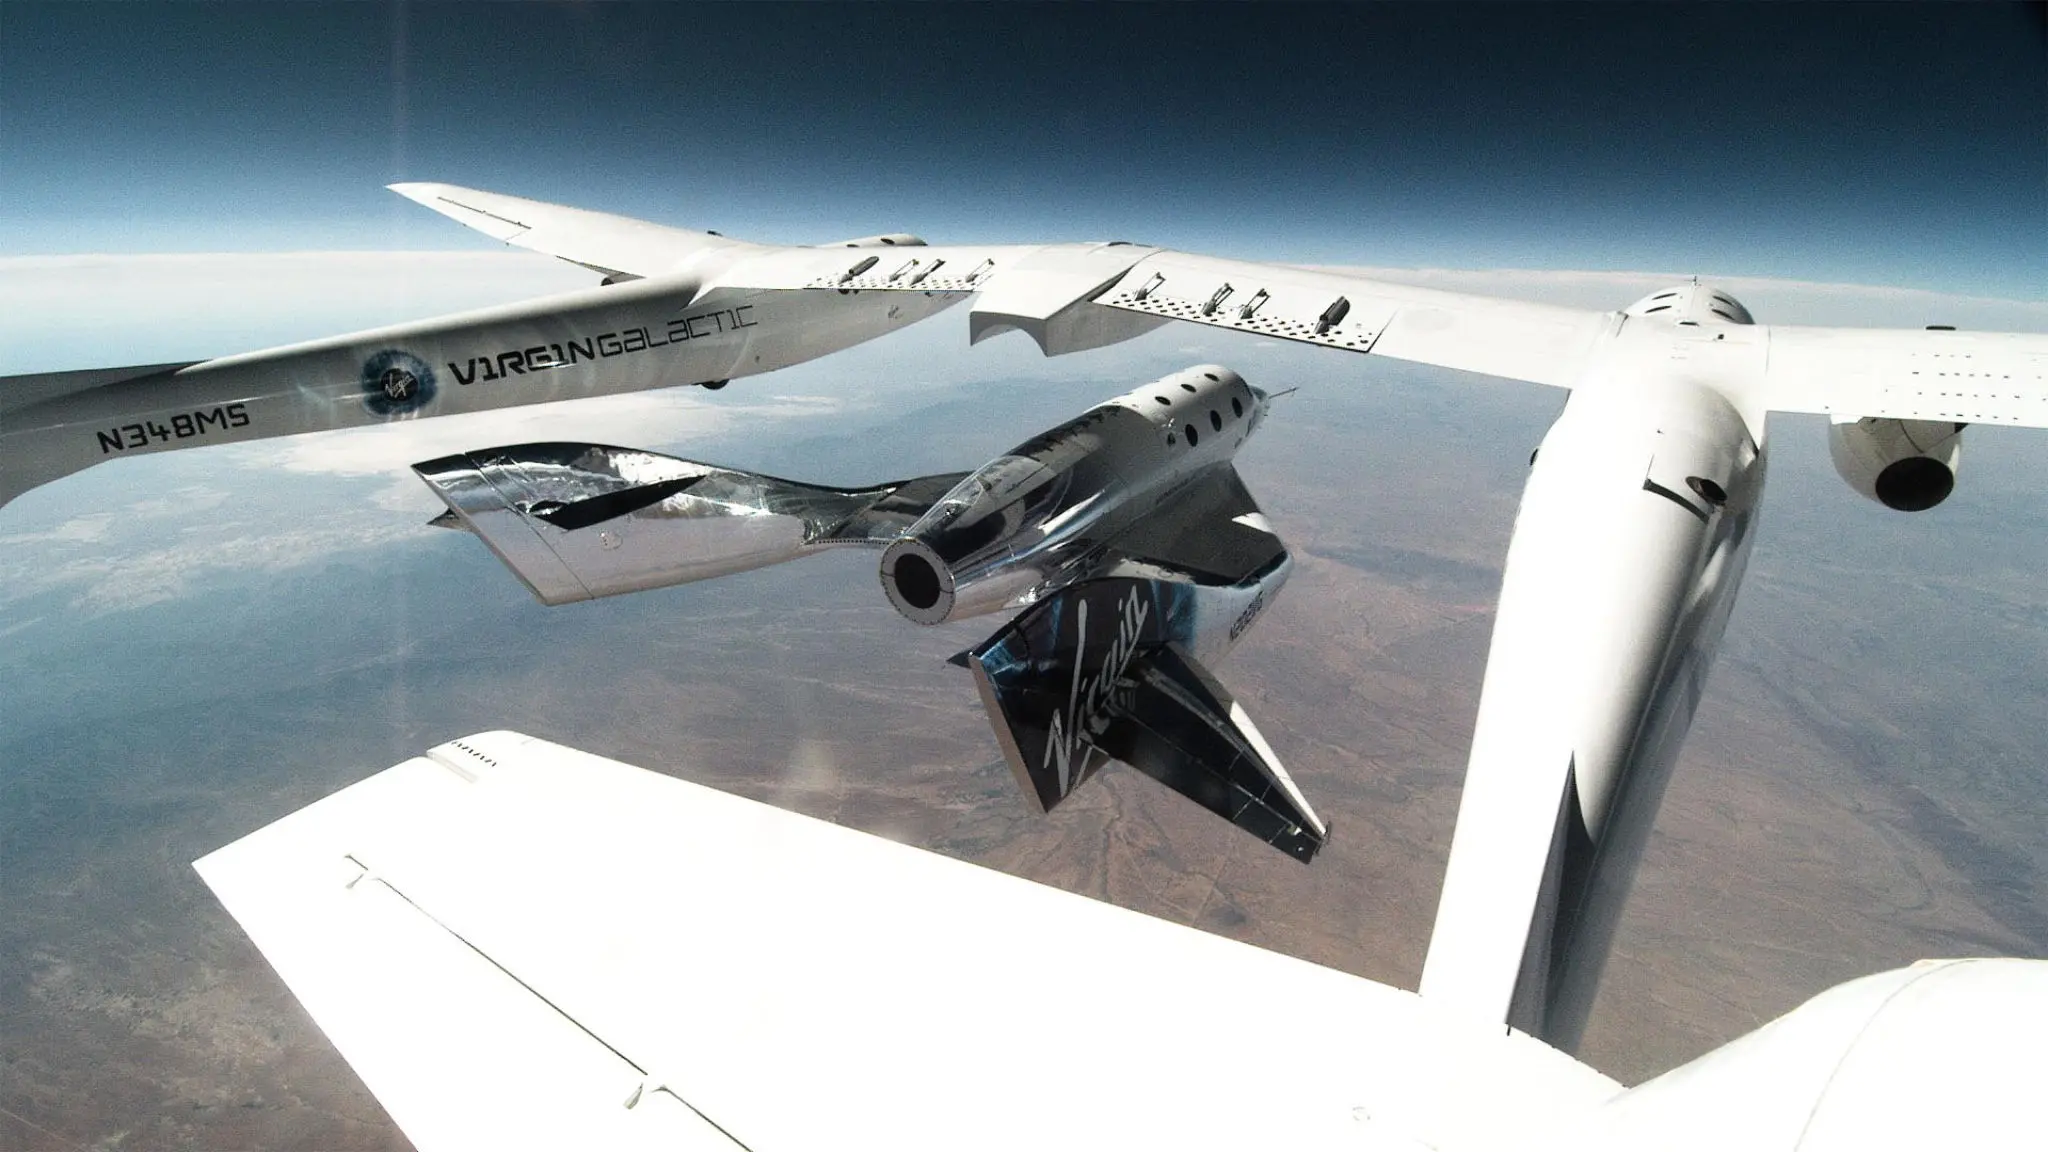 FAA ra lệnh cấm bay đối với Virgin Galactic để hoàn tất điều tra chuyến bay trước đó.

Ảnh: Máy bay SpaceShipTwo lúc vừa tách ra khỏi tàu mẹ. Credit: Virgin Galactic.